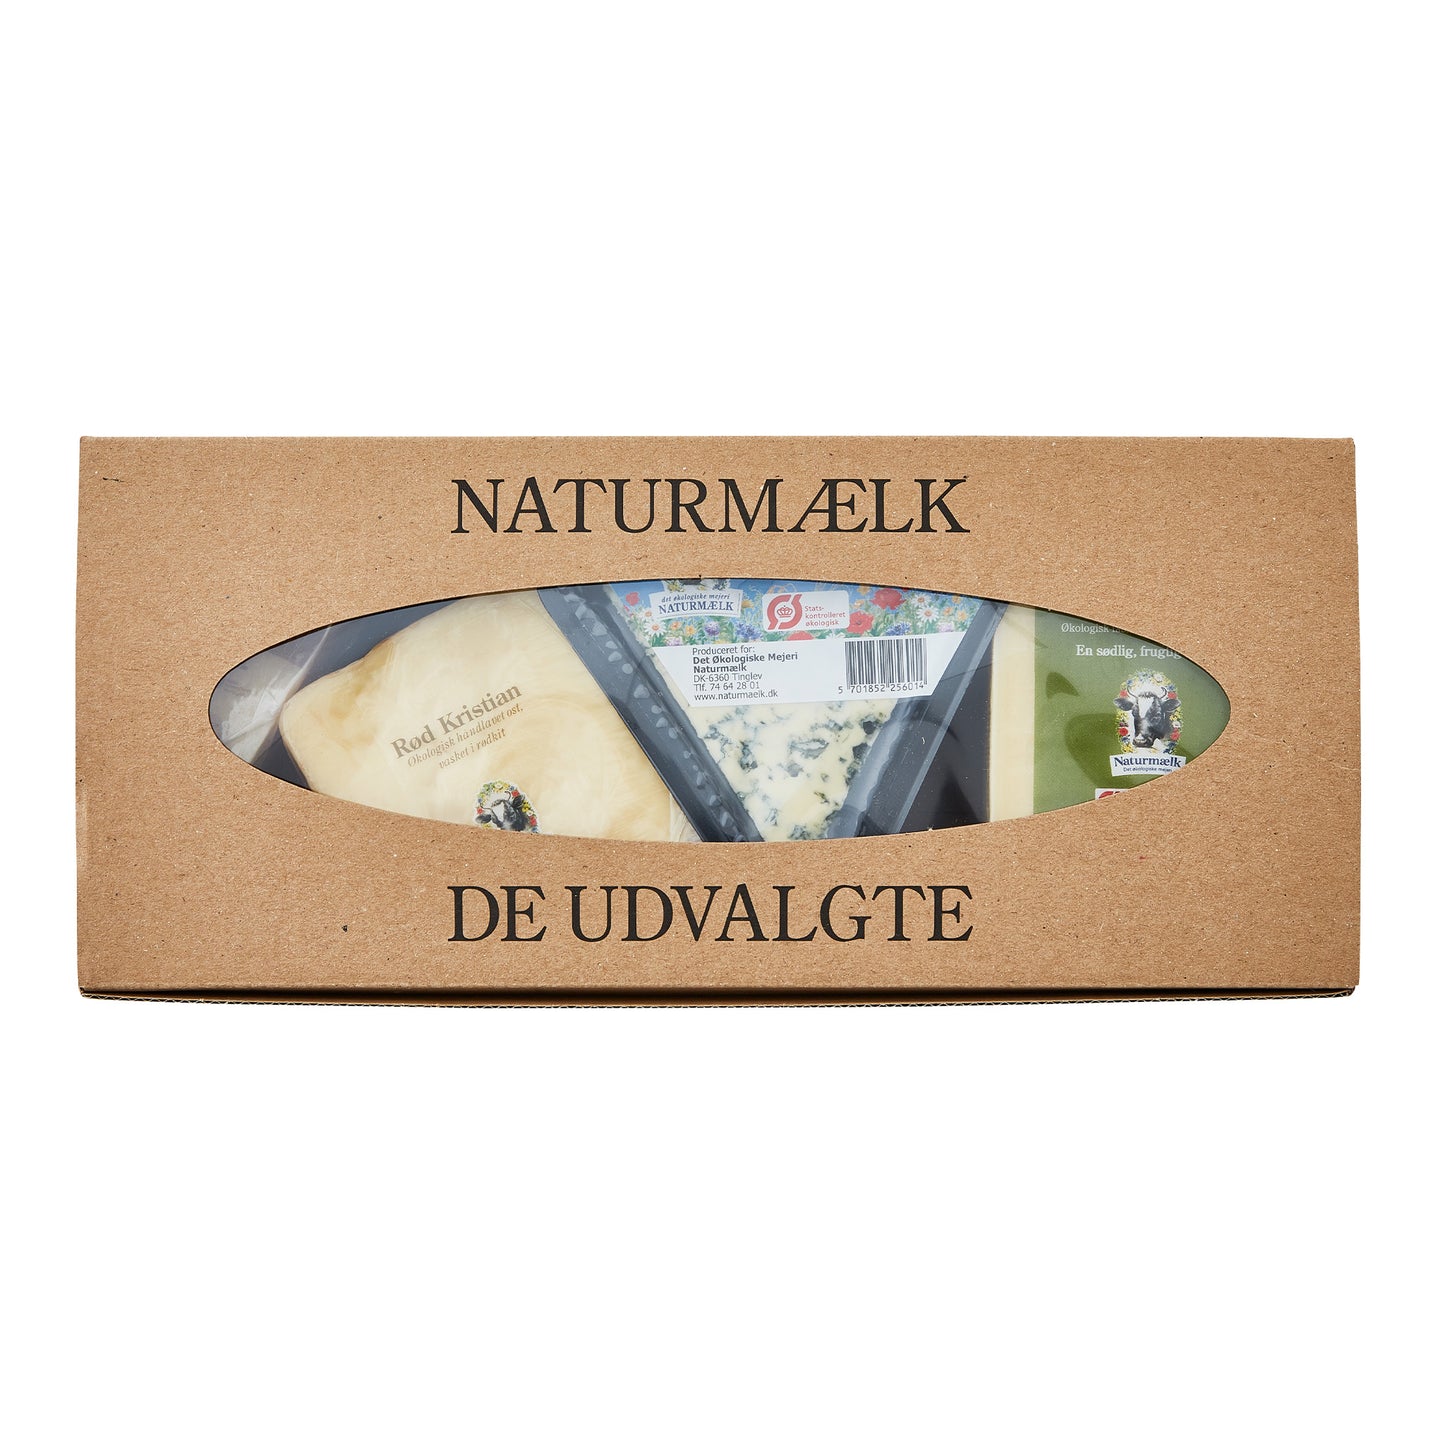 Naturmælk kasse med glimt af oste gennem vinduet.